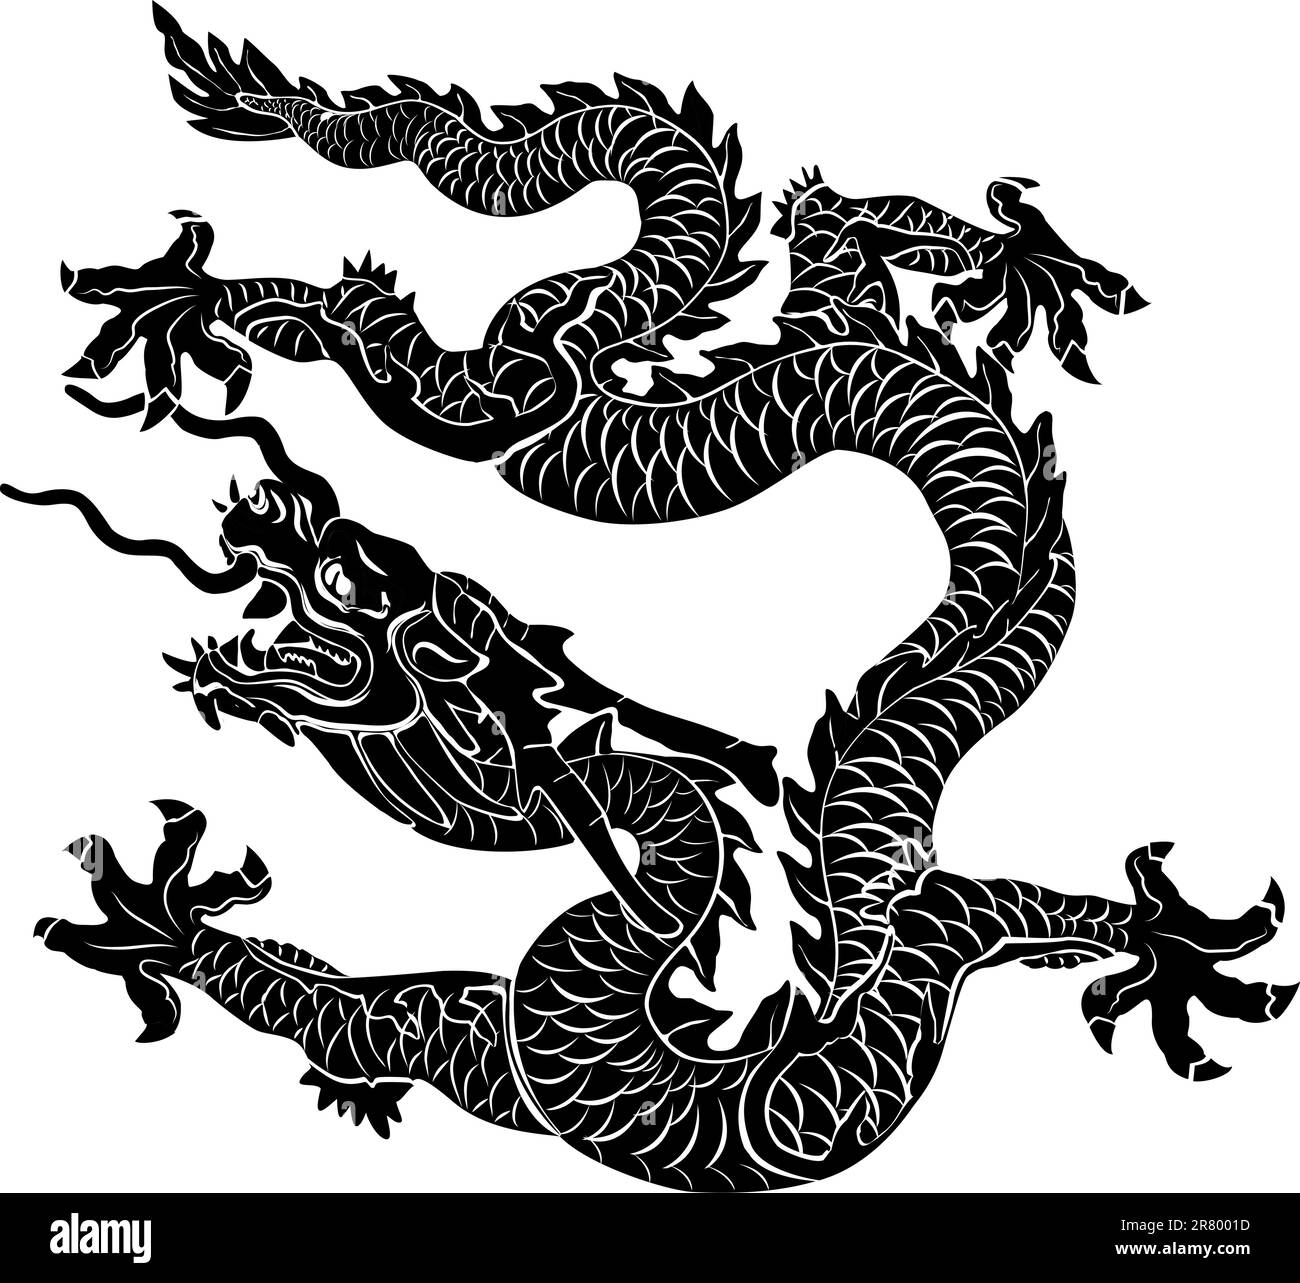 Dragon noir isolé. Illustration vectorielle Illustration de Vecteur